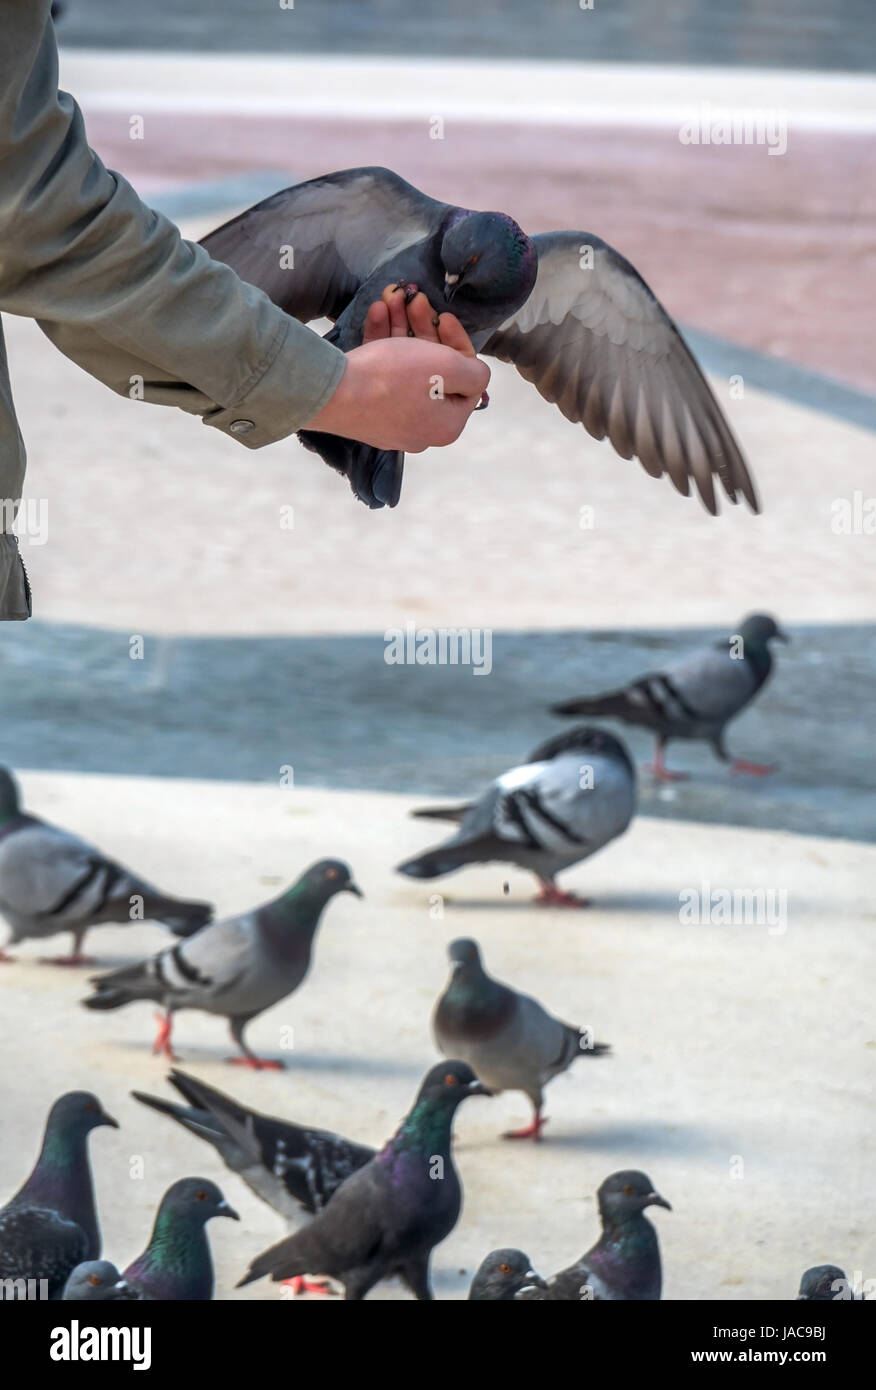 A man feeds pigeons in a town, Ein Mann füttert in einer Stadt Tauben Stock Photo